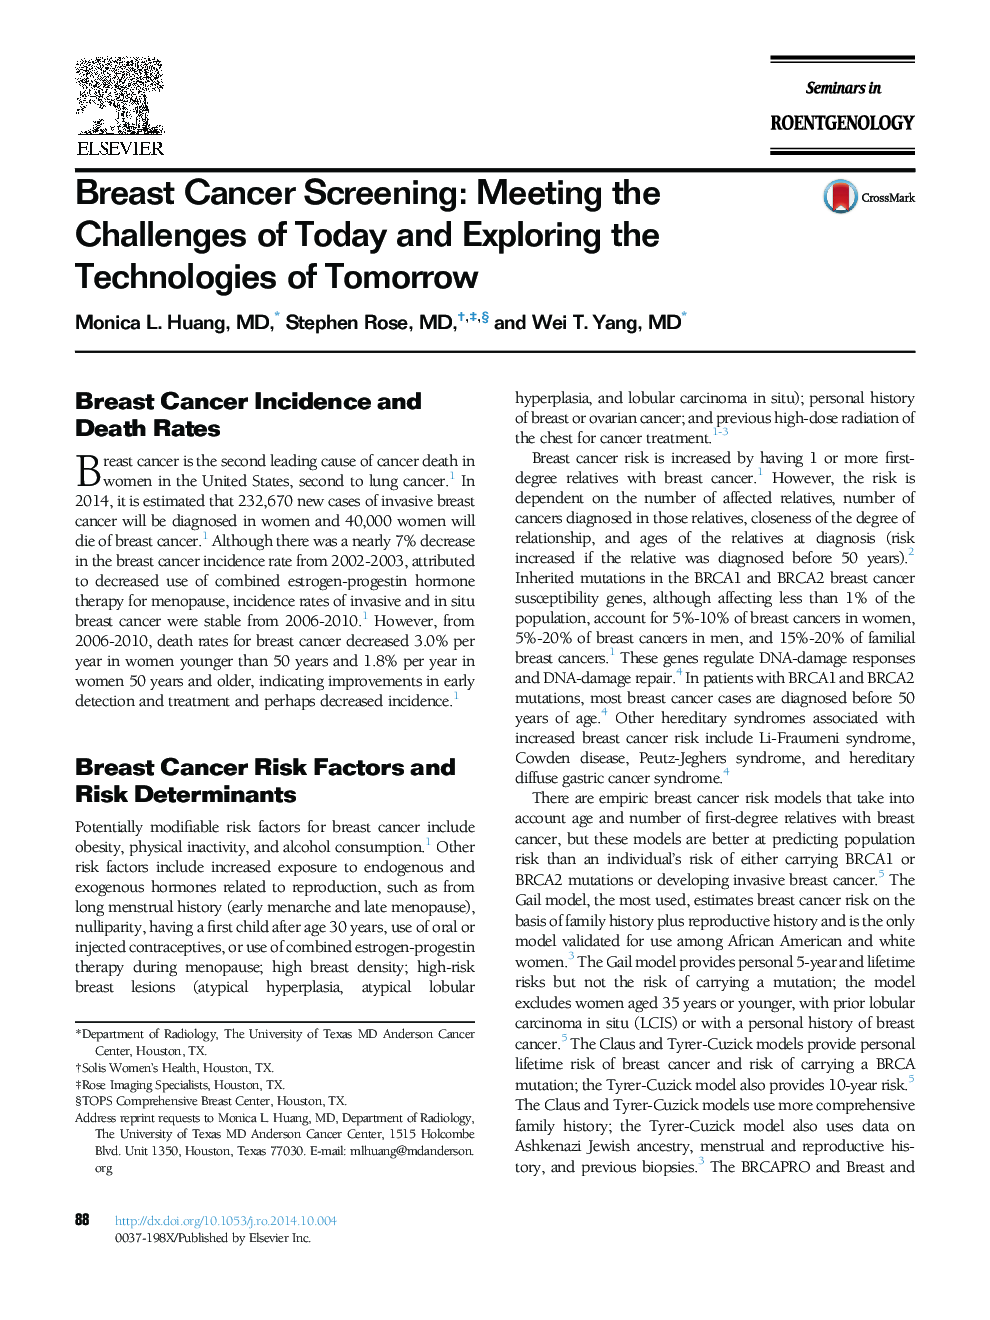 غربالگری سرطان پستان: برآورده کردن چالش های امروز و بررسی فن آوری های فردا 